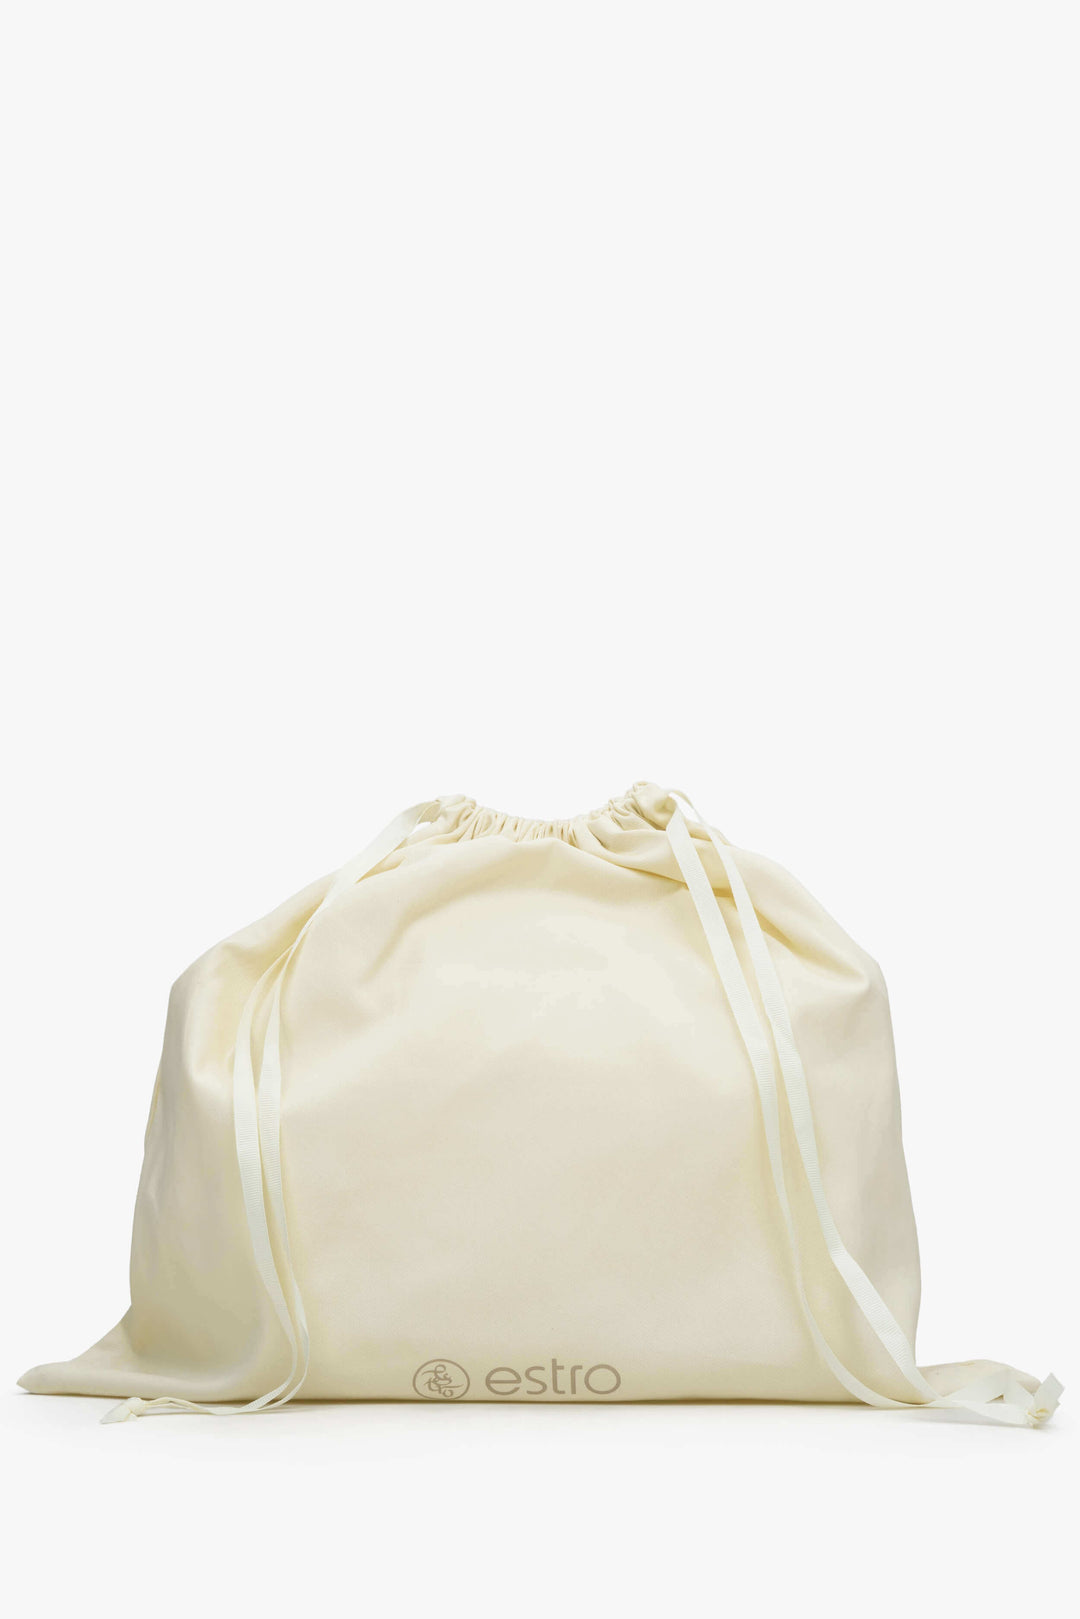 Women's Light Beige Shopper Bag made of Premium Italian Genuine Leather Estro ER00115082